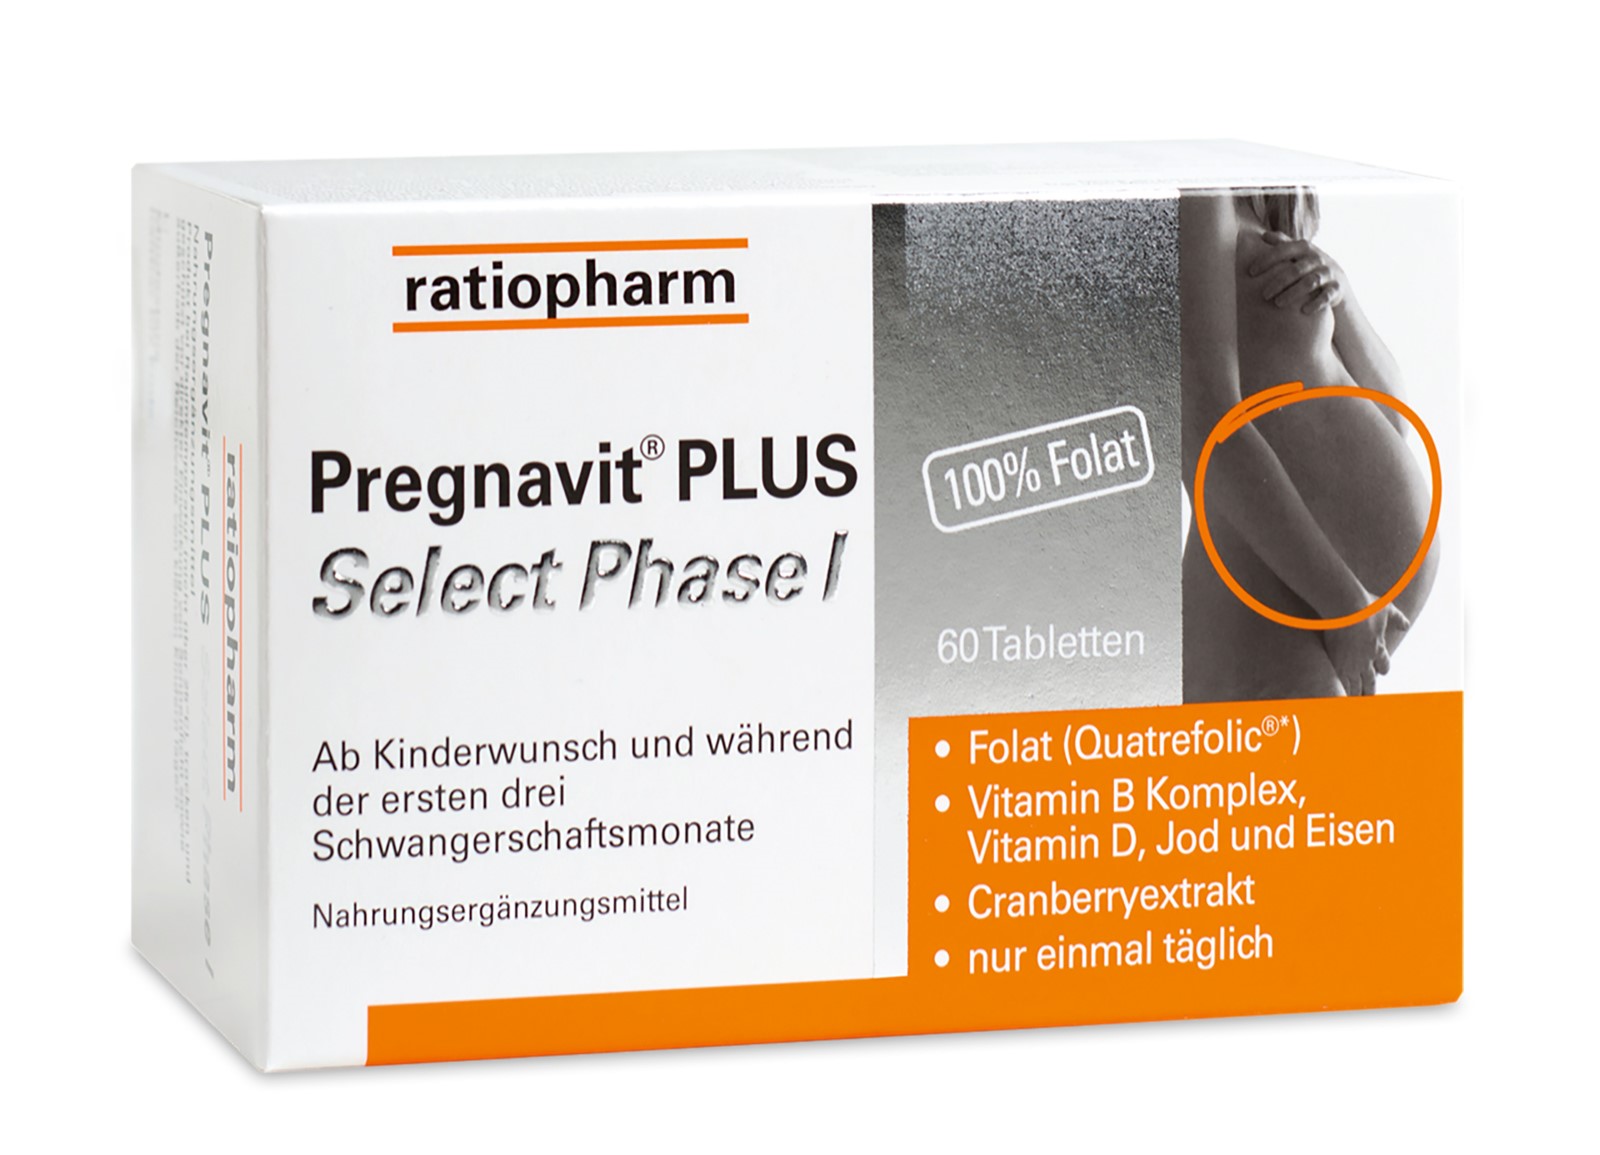 Pregnavit® PLUS Select Phase I